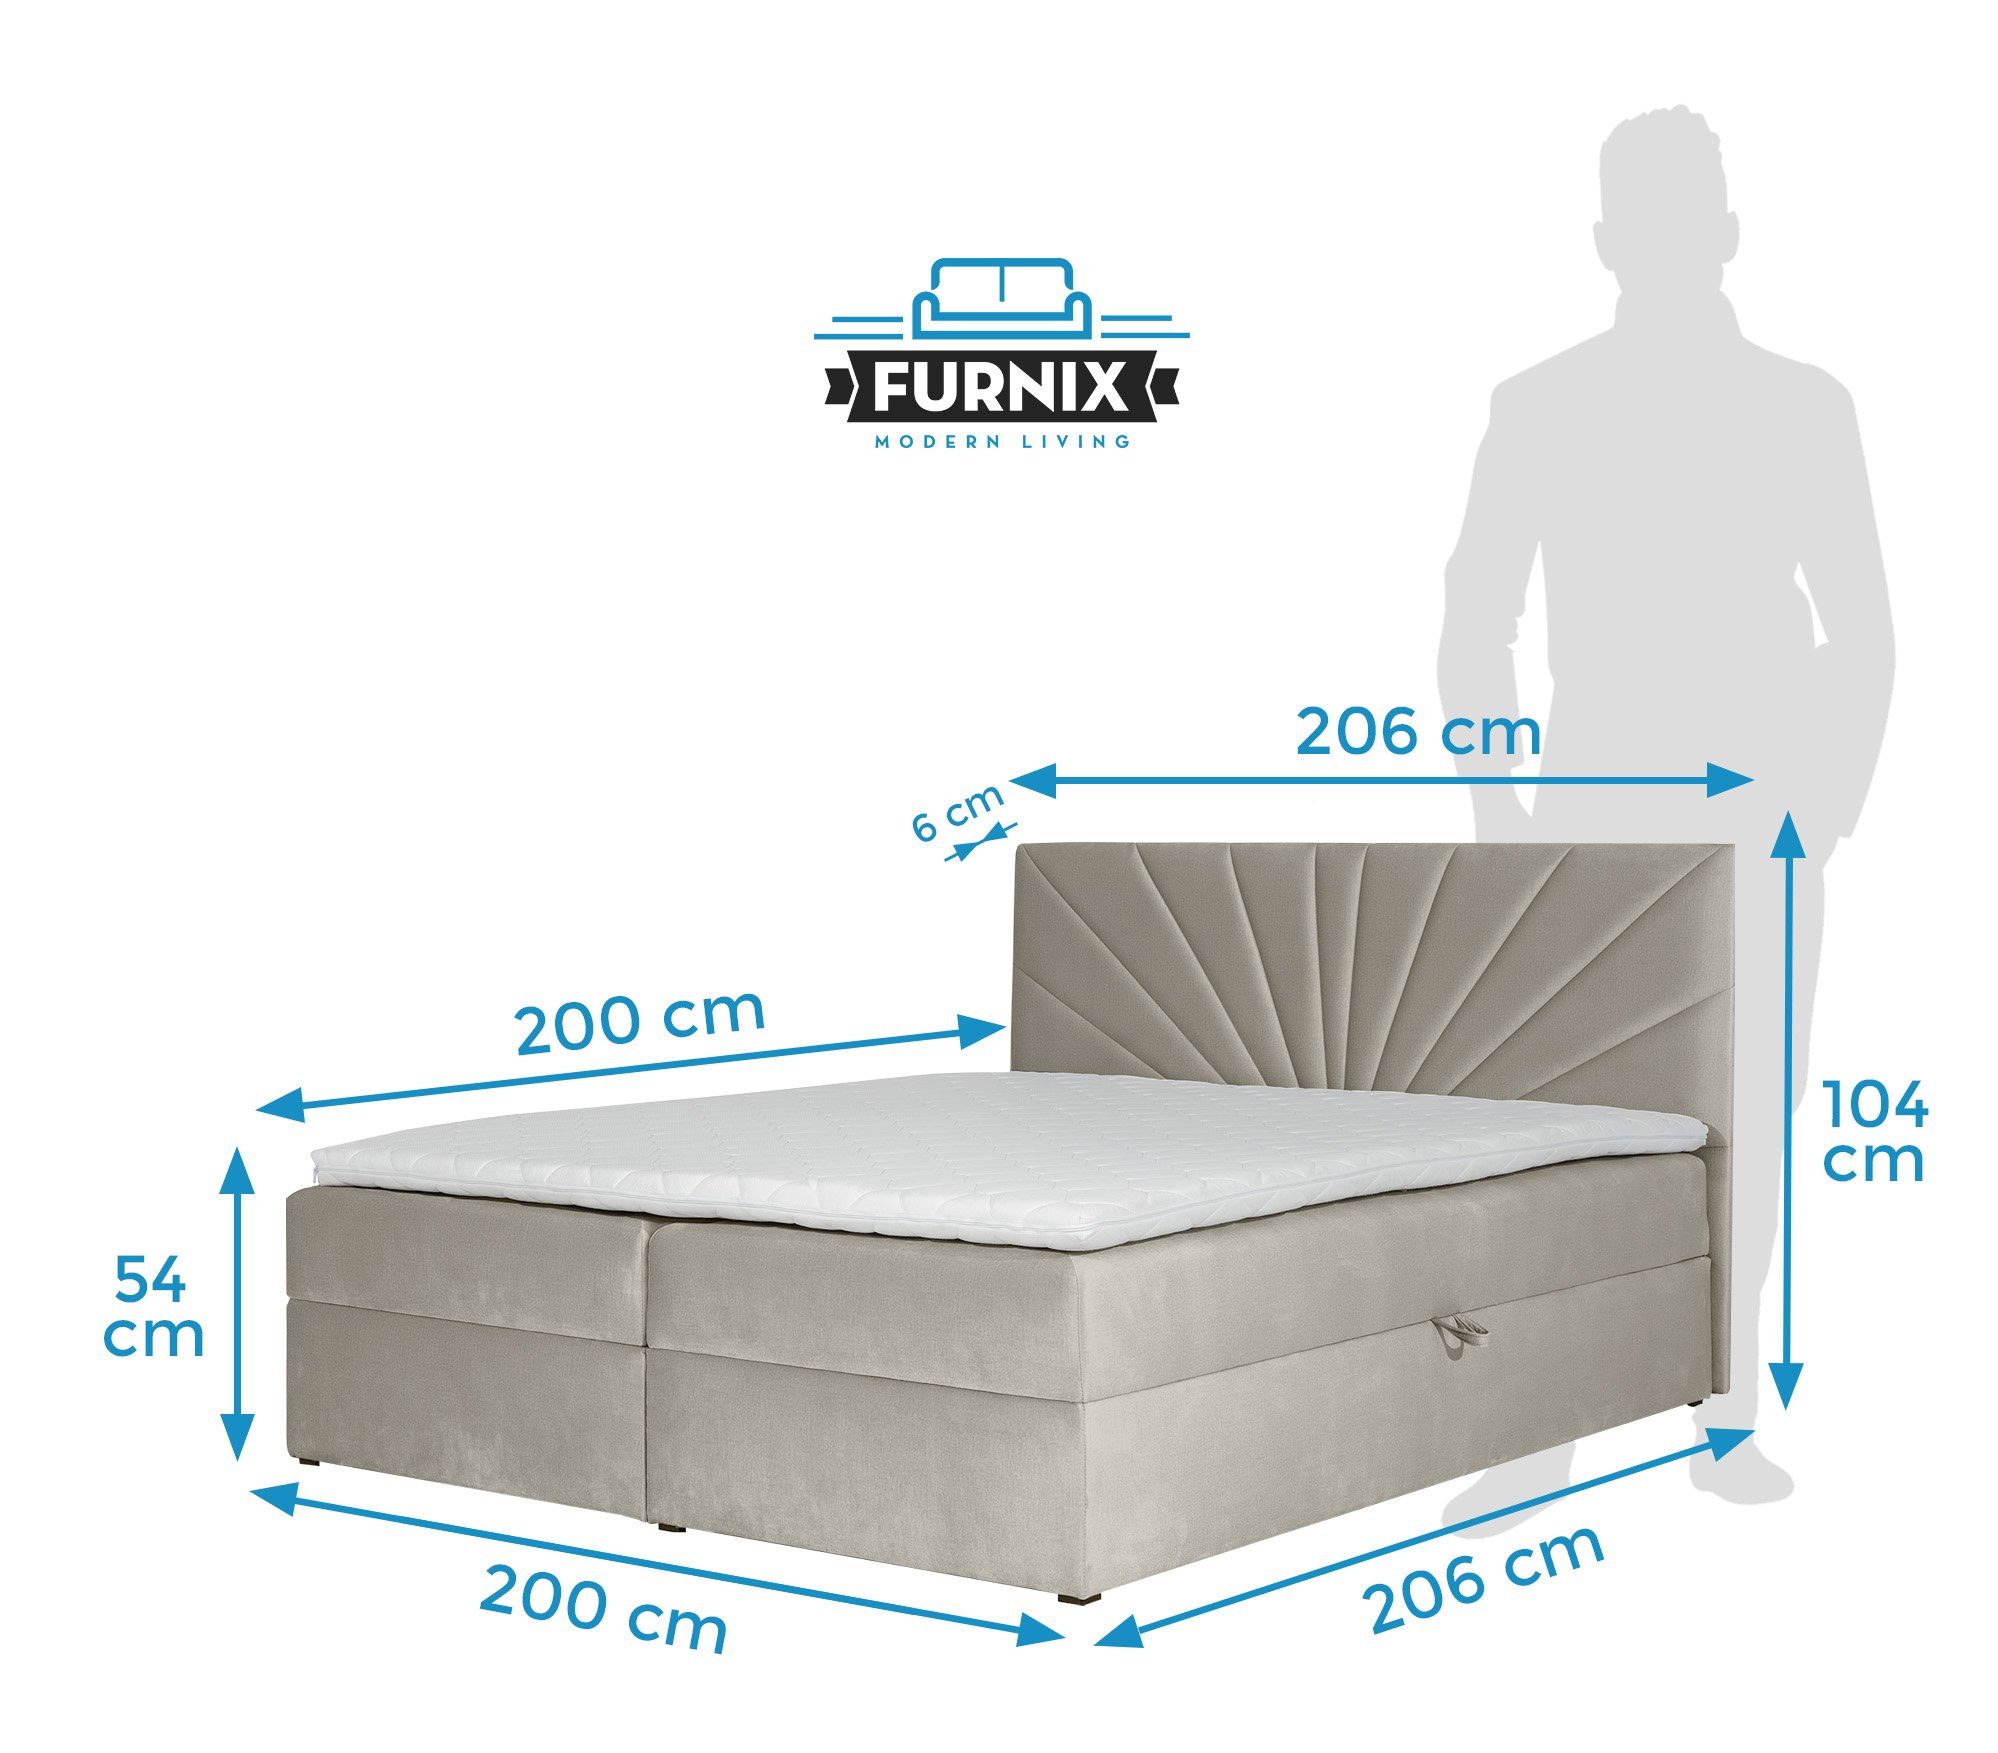 Furnix Boxspringbett TREZO und Bettkasten 4 tiefen mit 120/140/160/180/200x200 Beige Polsterstoffe cm Topper, hochwertige